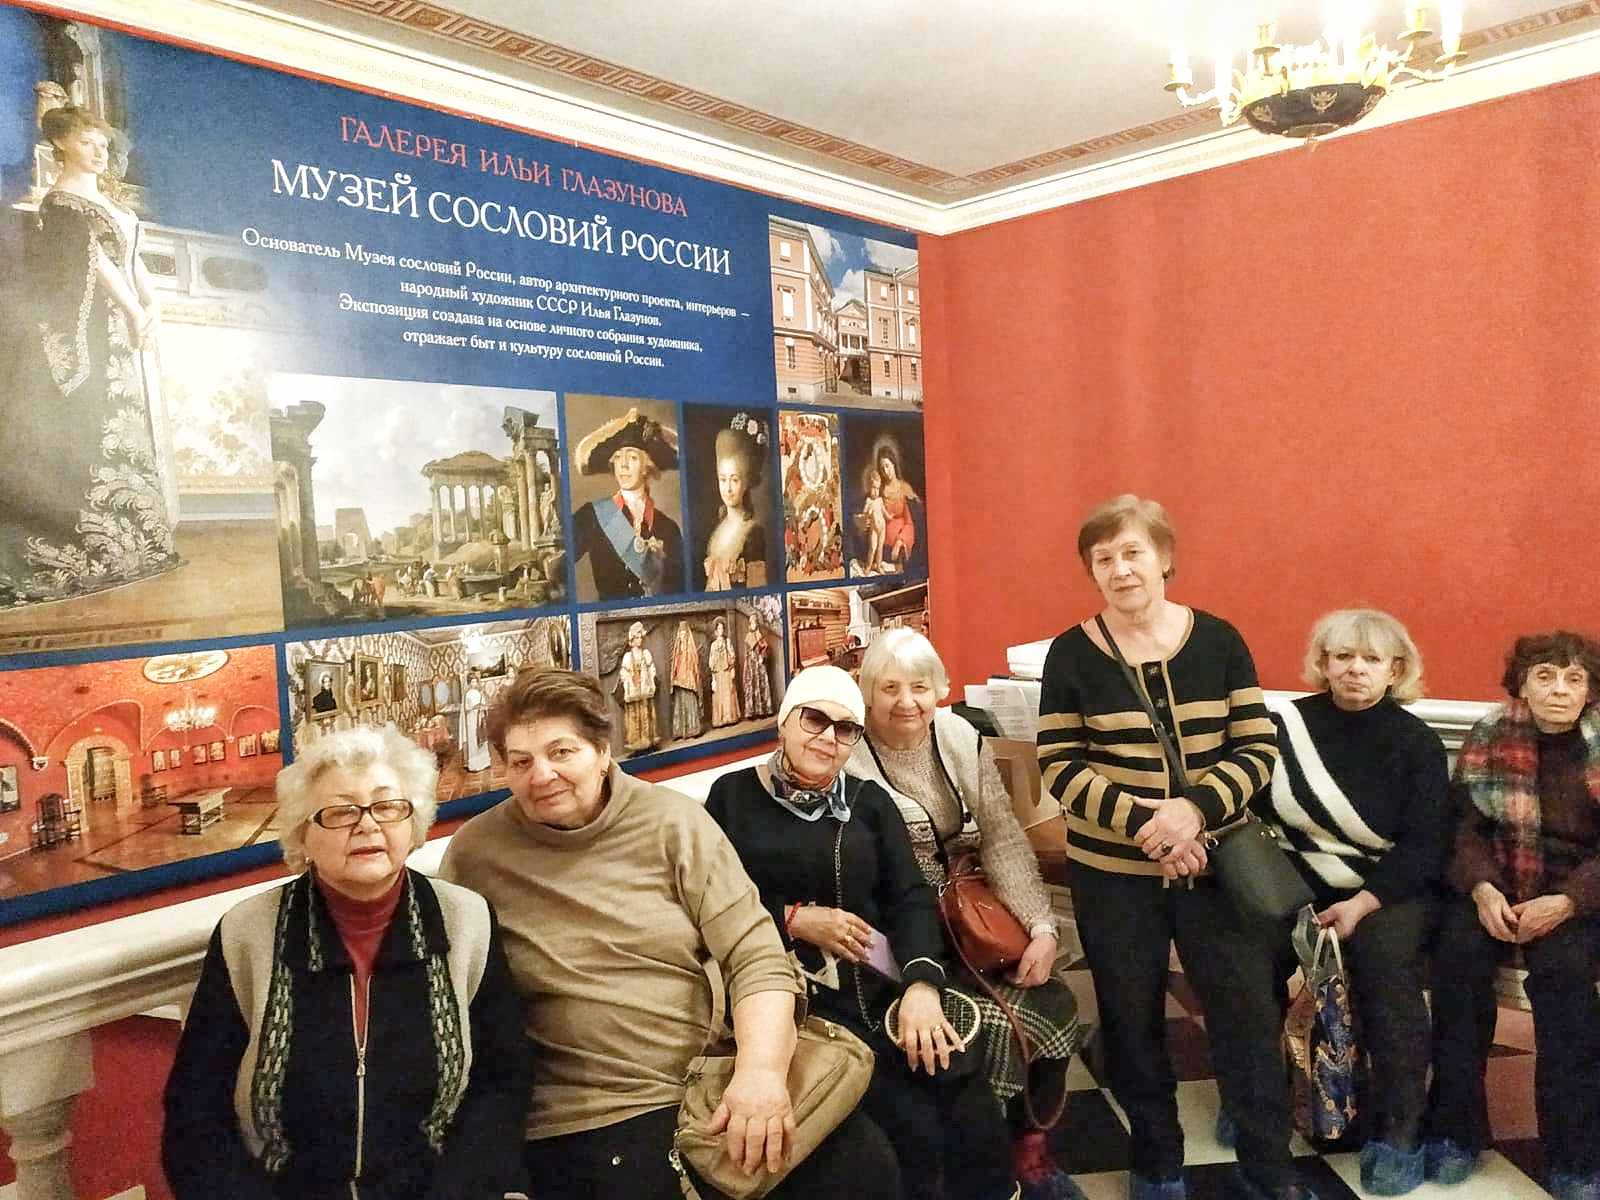 Музей сословий России - бесценный дар городу Москве